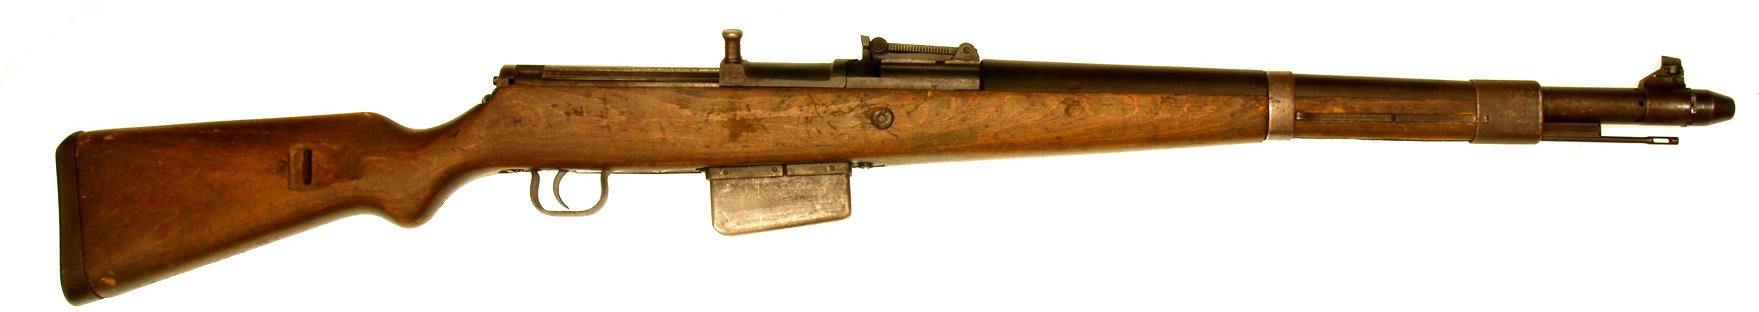 Gewehr 41